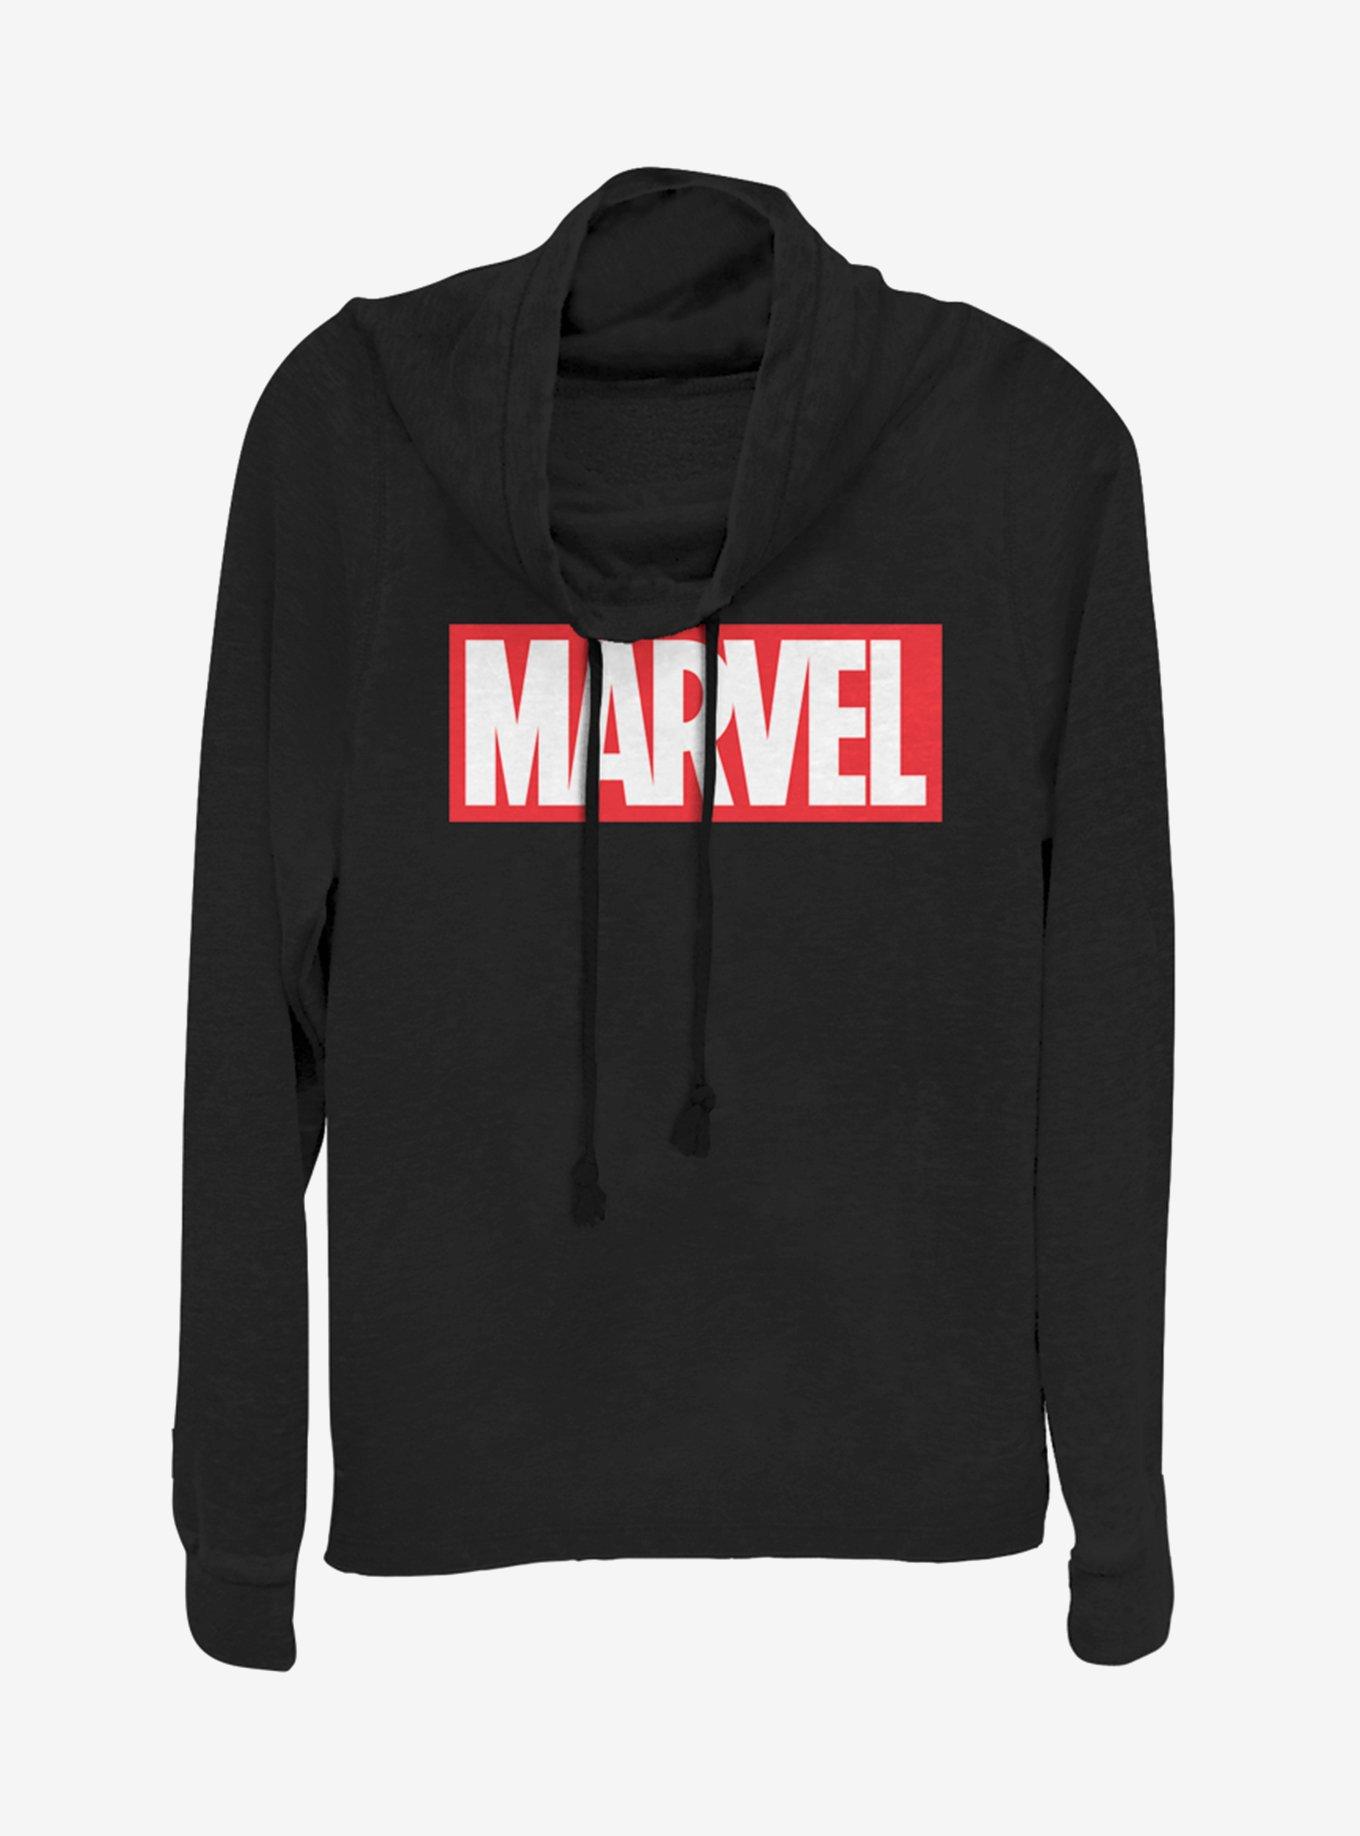 Marvel Marvel Brick Cowlneck Long-Sleeve Girls Top, BLACK, hi-res